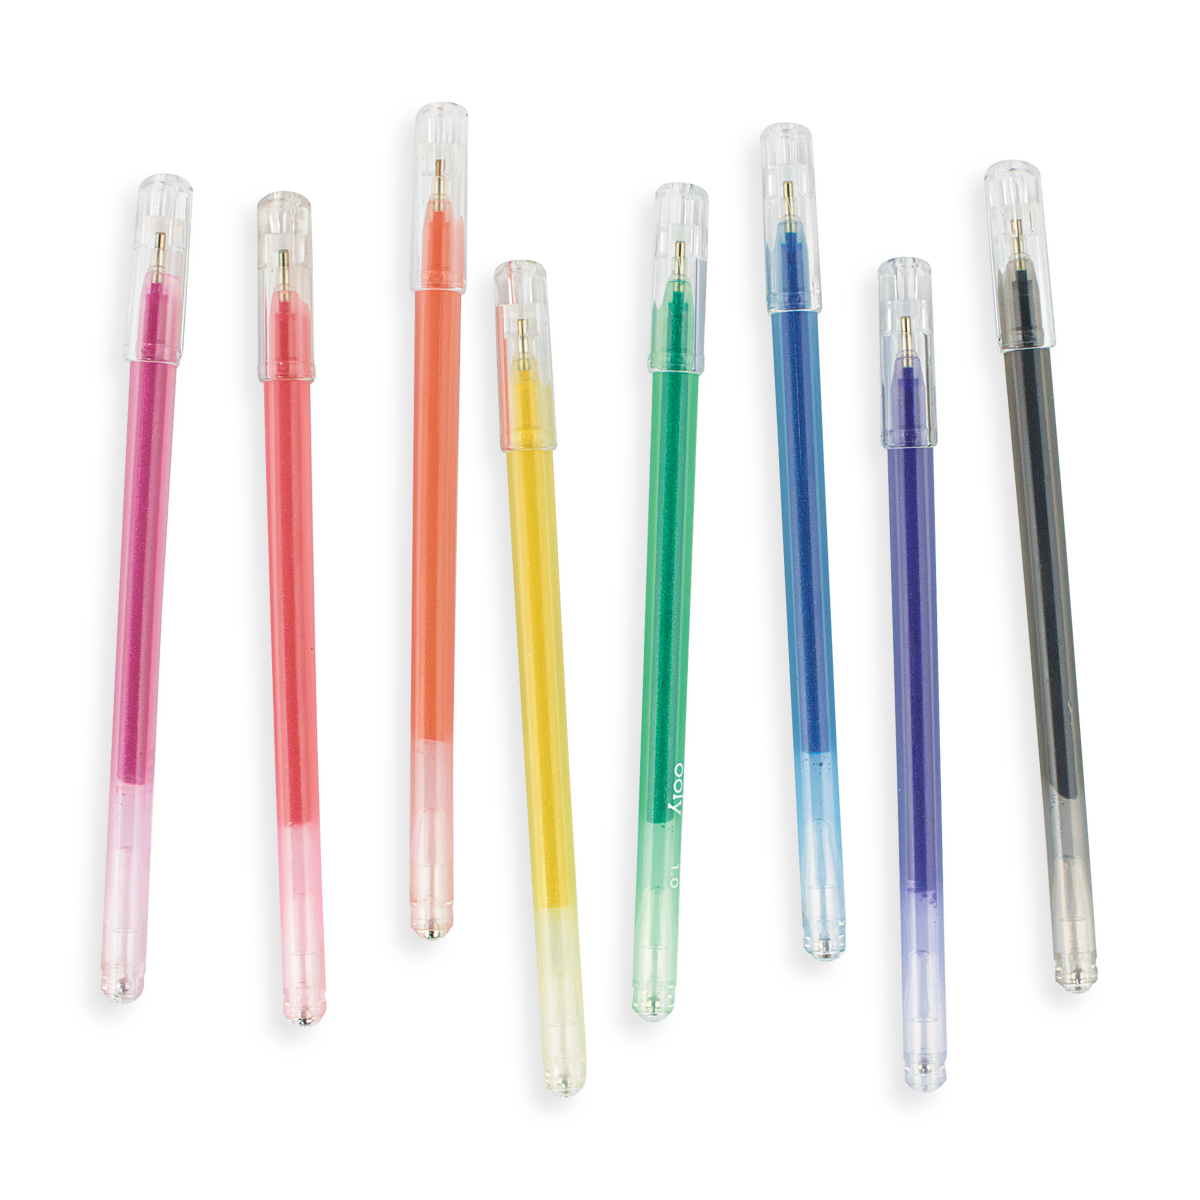 Crayon Glittered Pen  Glitter pens, Pen diy, Fancy pens